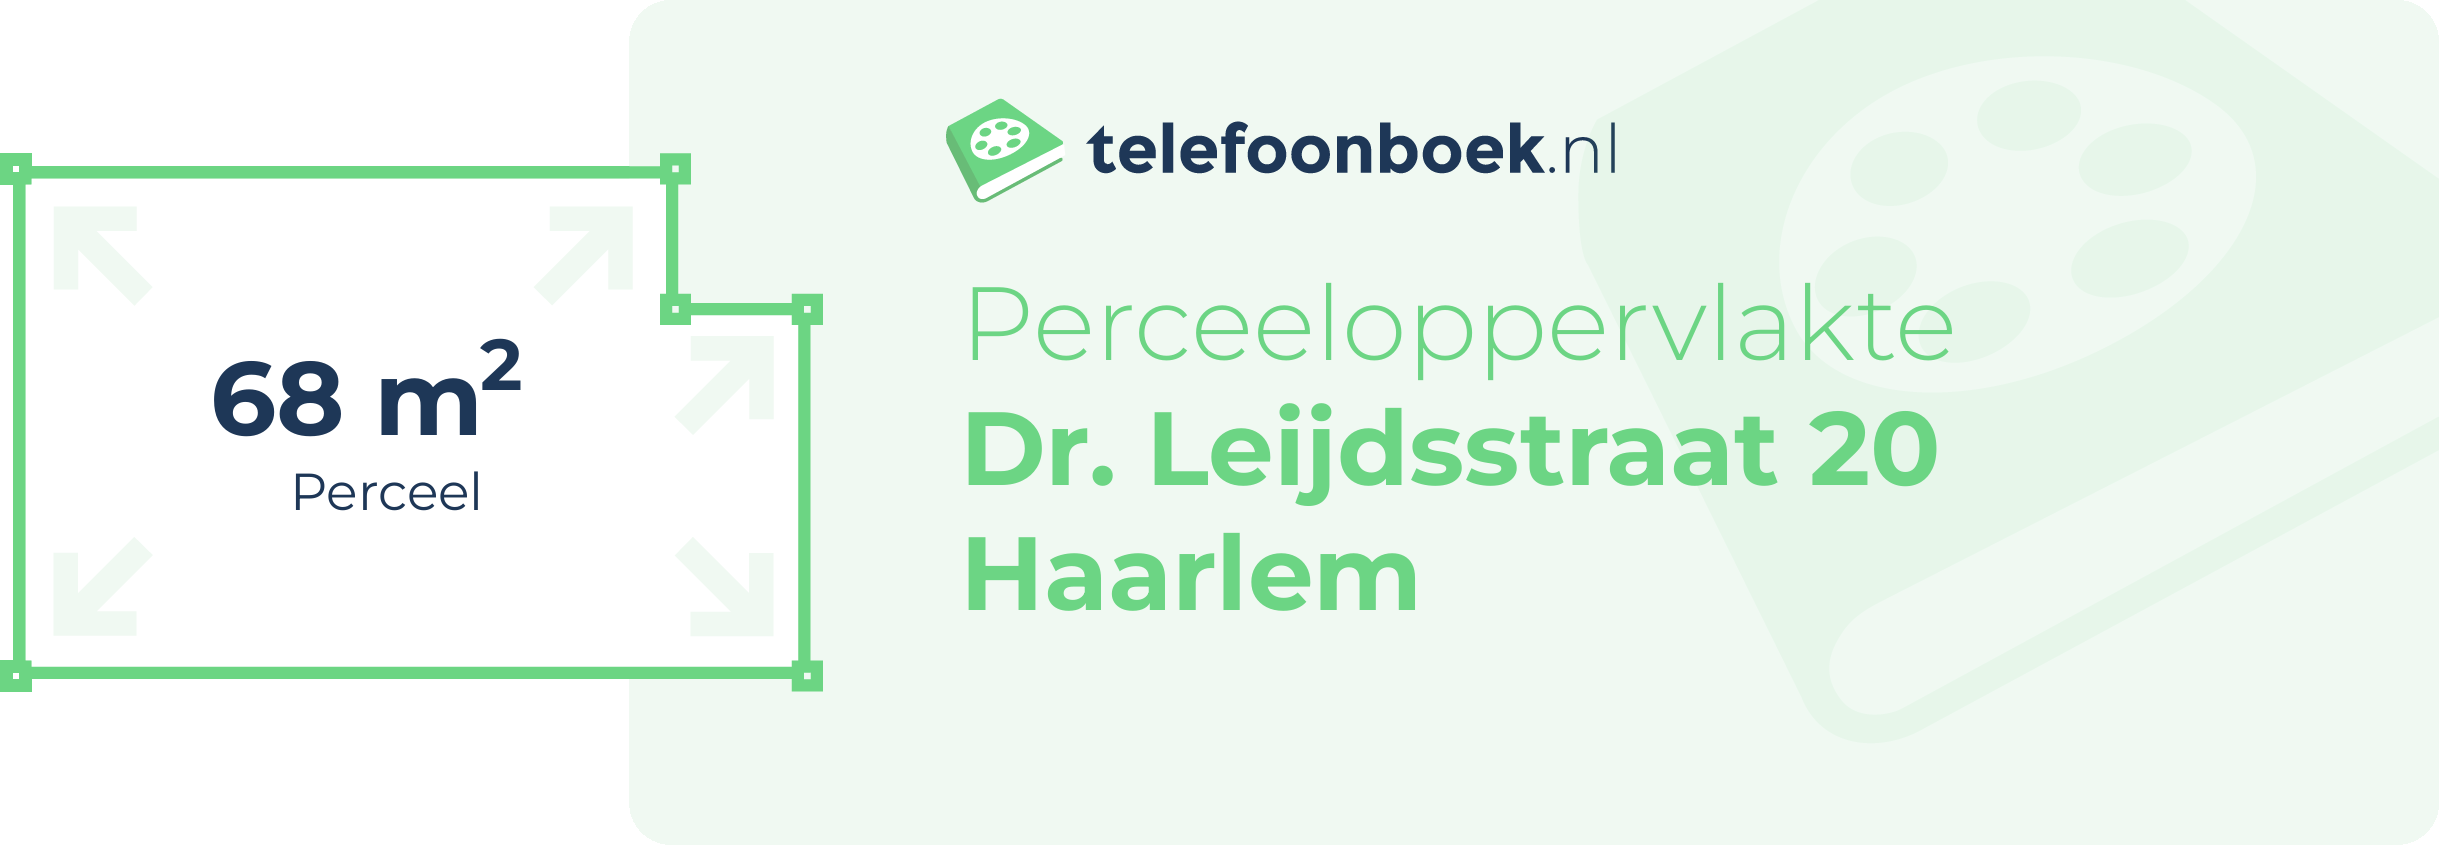 Perceeloppervlakte Dr. Leijdsstraat 20 Haarlem